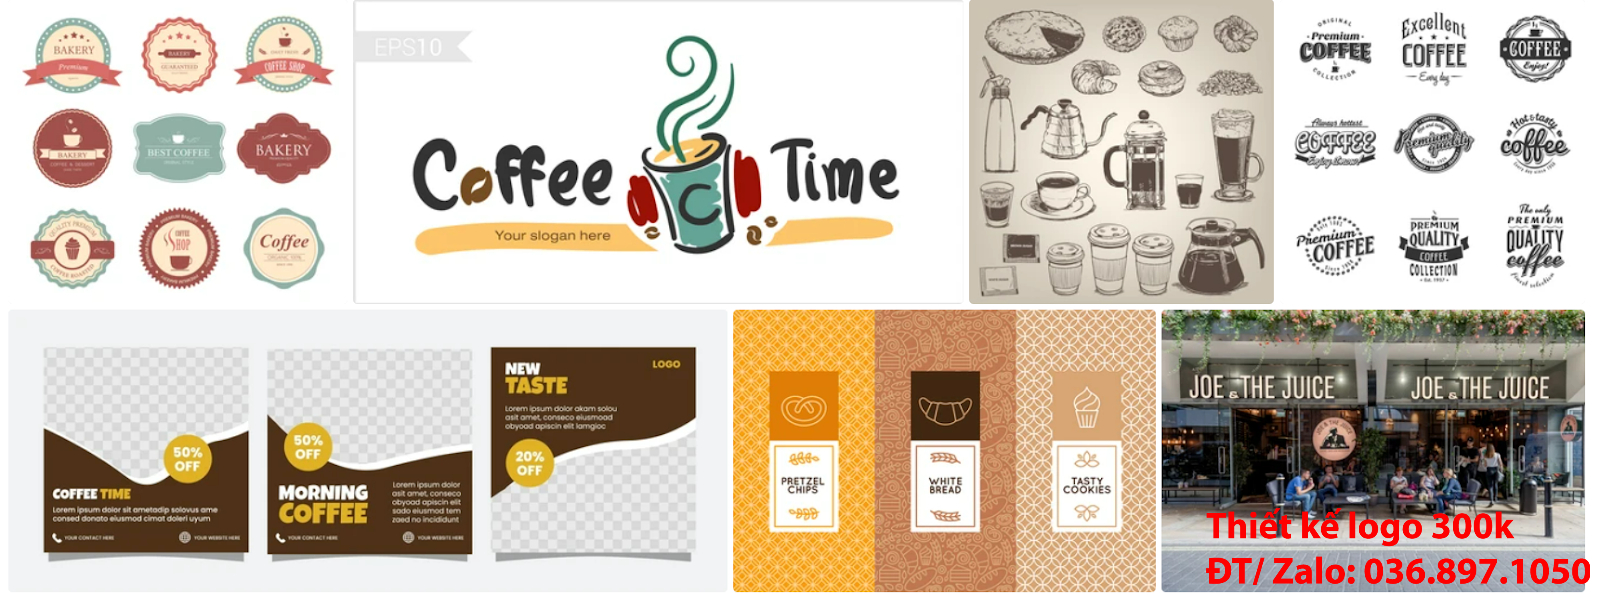 Công ty chuyên thiết kế mẫu logo đẹp cà phê cafe coffee sáng tạo đẹp tại Hà Nội